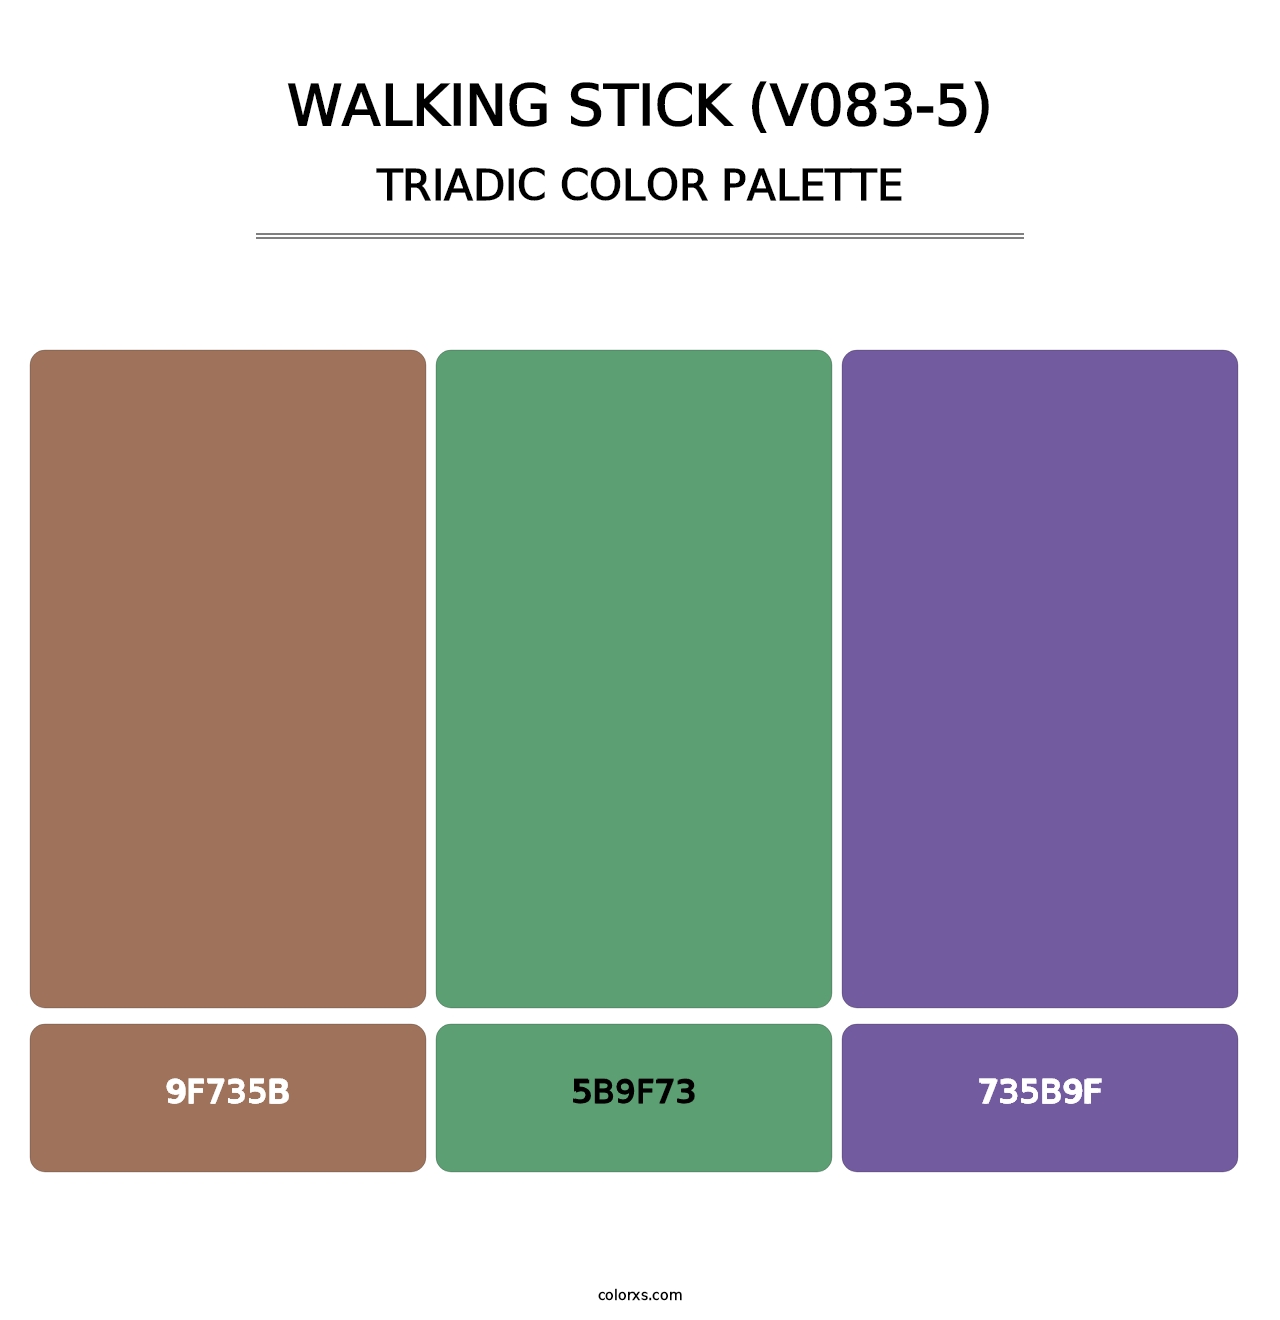 Walking Stick (V083-5) - Triadic Color Palette